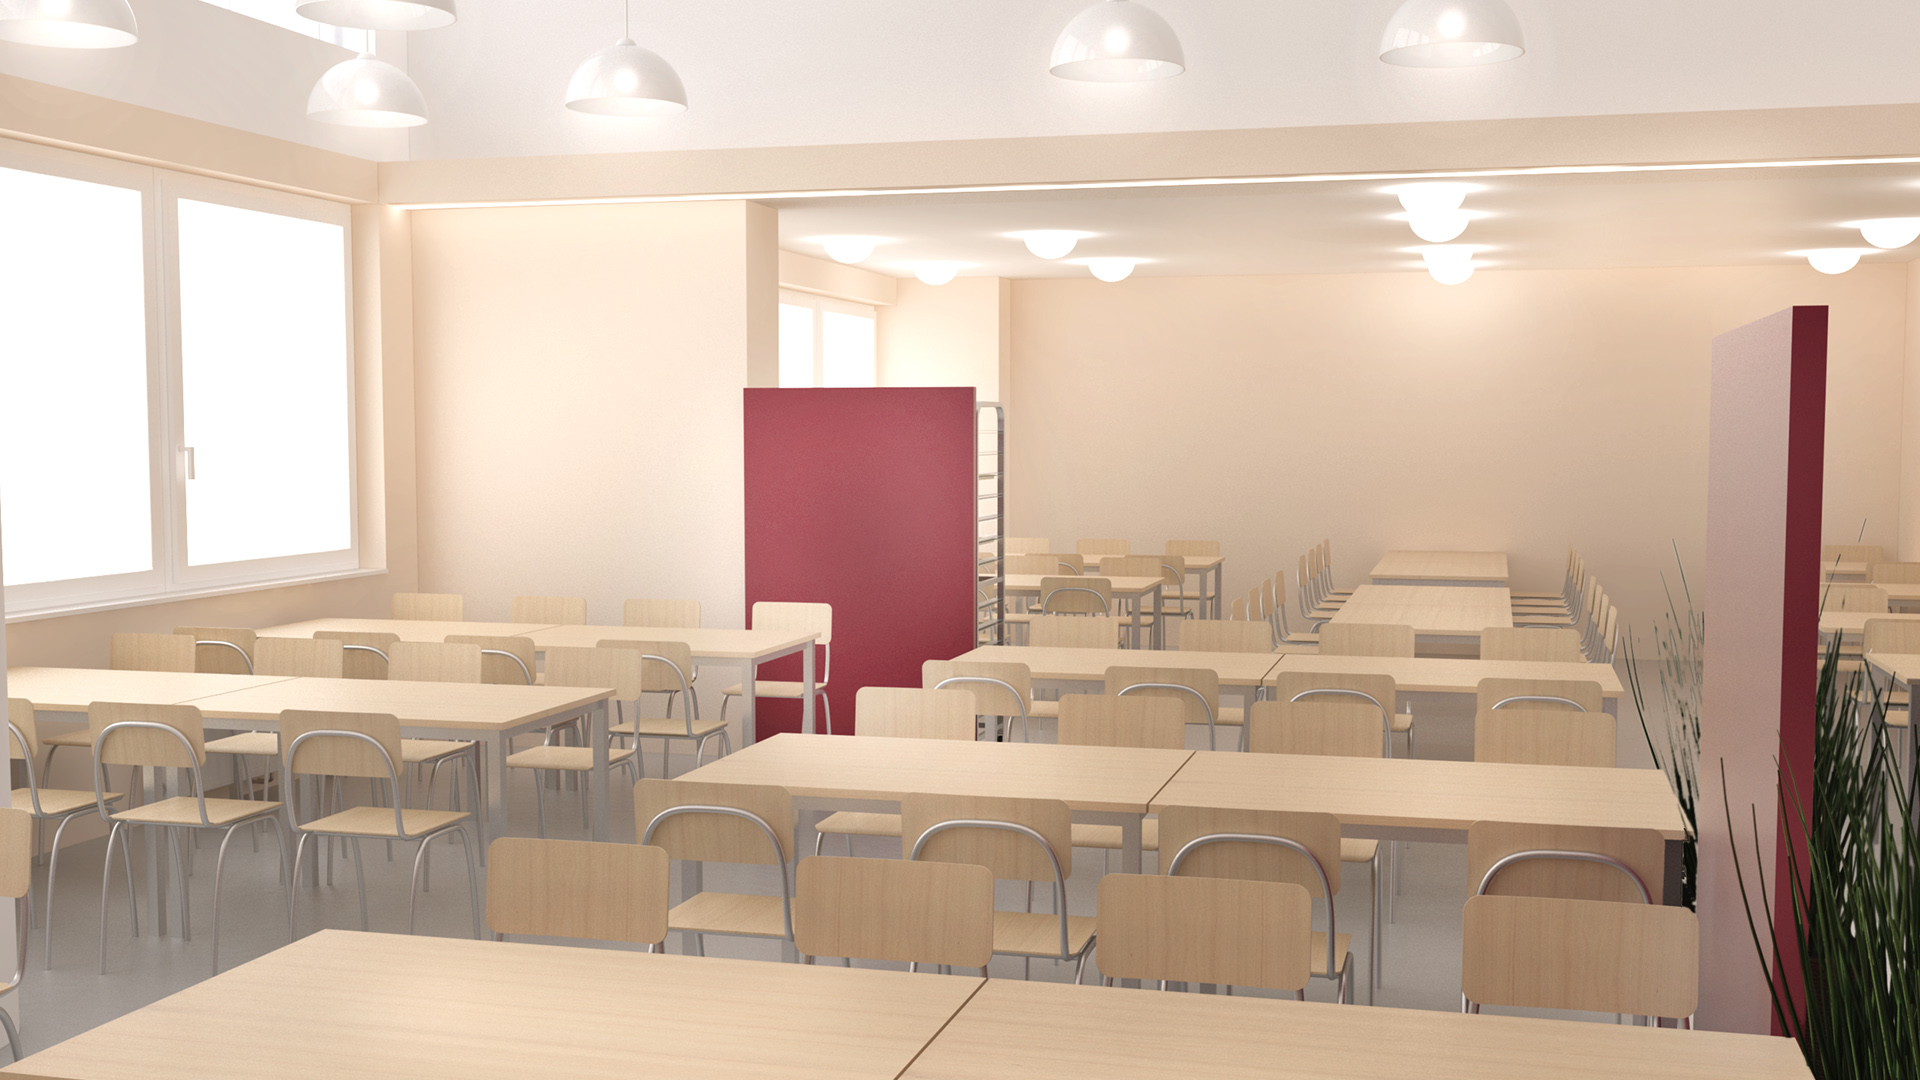 Architektonický návrh řešení rekonstrukce jídelny střední školy v Nuslích. Návrh spočívá v rozdělení místosti opticky svítidly a designem podlahy z vinylu.Závěsná svítidla je jedné